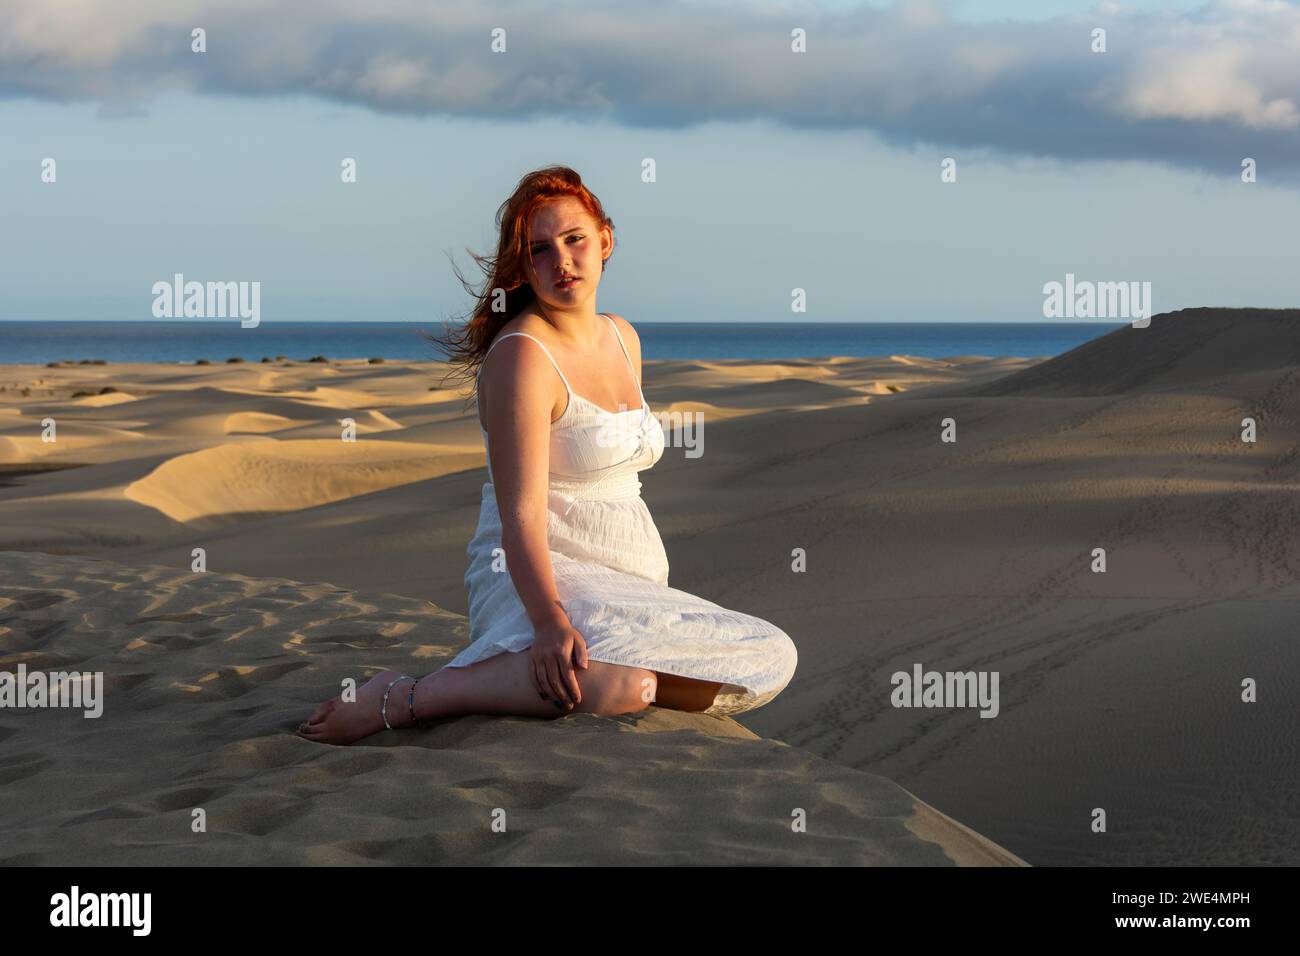 Une jeune jolie fille aux cheveux roux en robe blanche s'assoit dans les dunes de sable en fin d'après-midi et profite des derniers rayons de soleil Banque D'Images